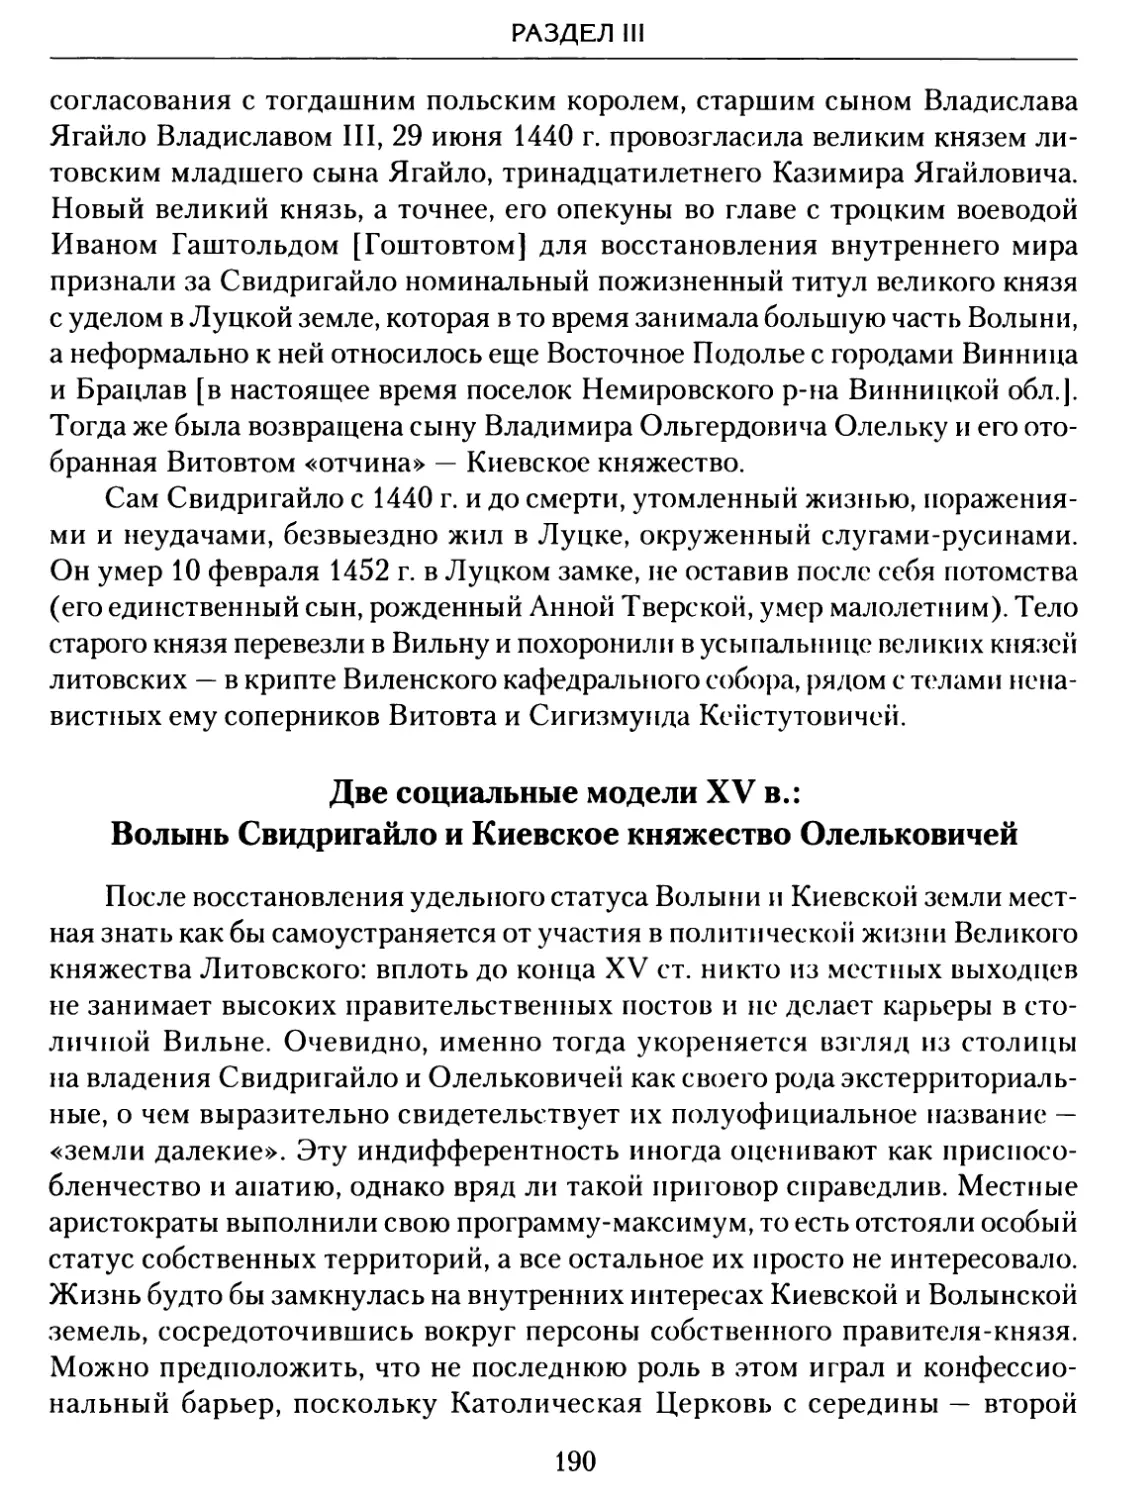 Две социальные модели XV в. Волынь Свидригайло и Киевское княжество Олельковичей